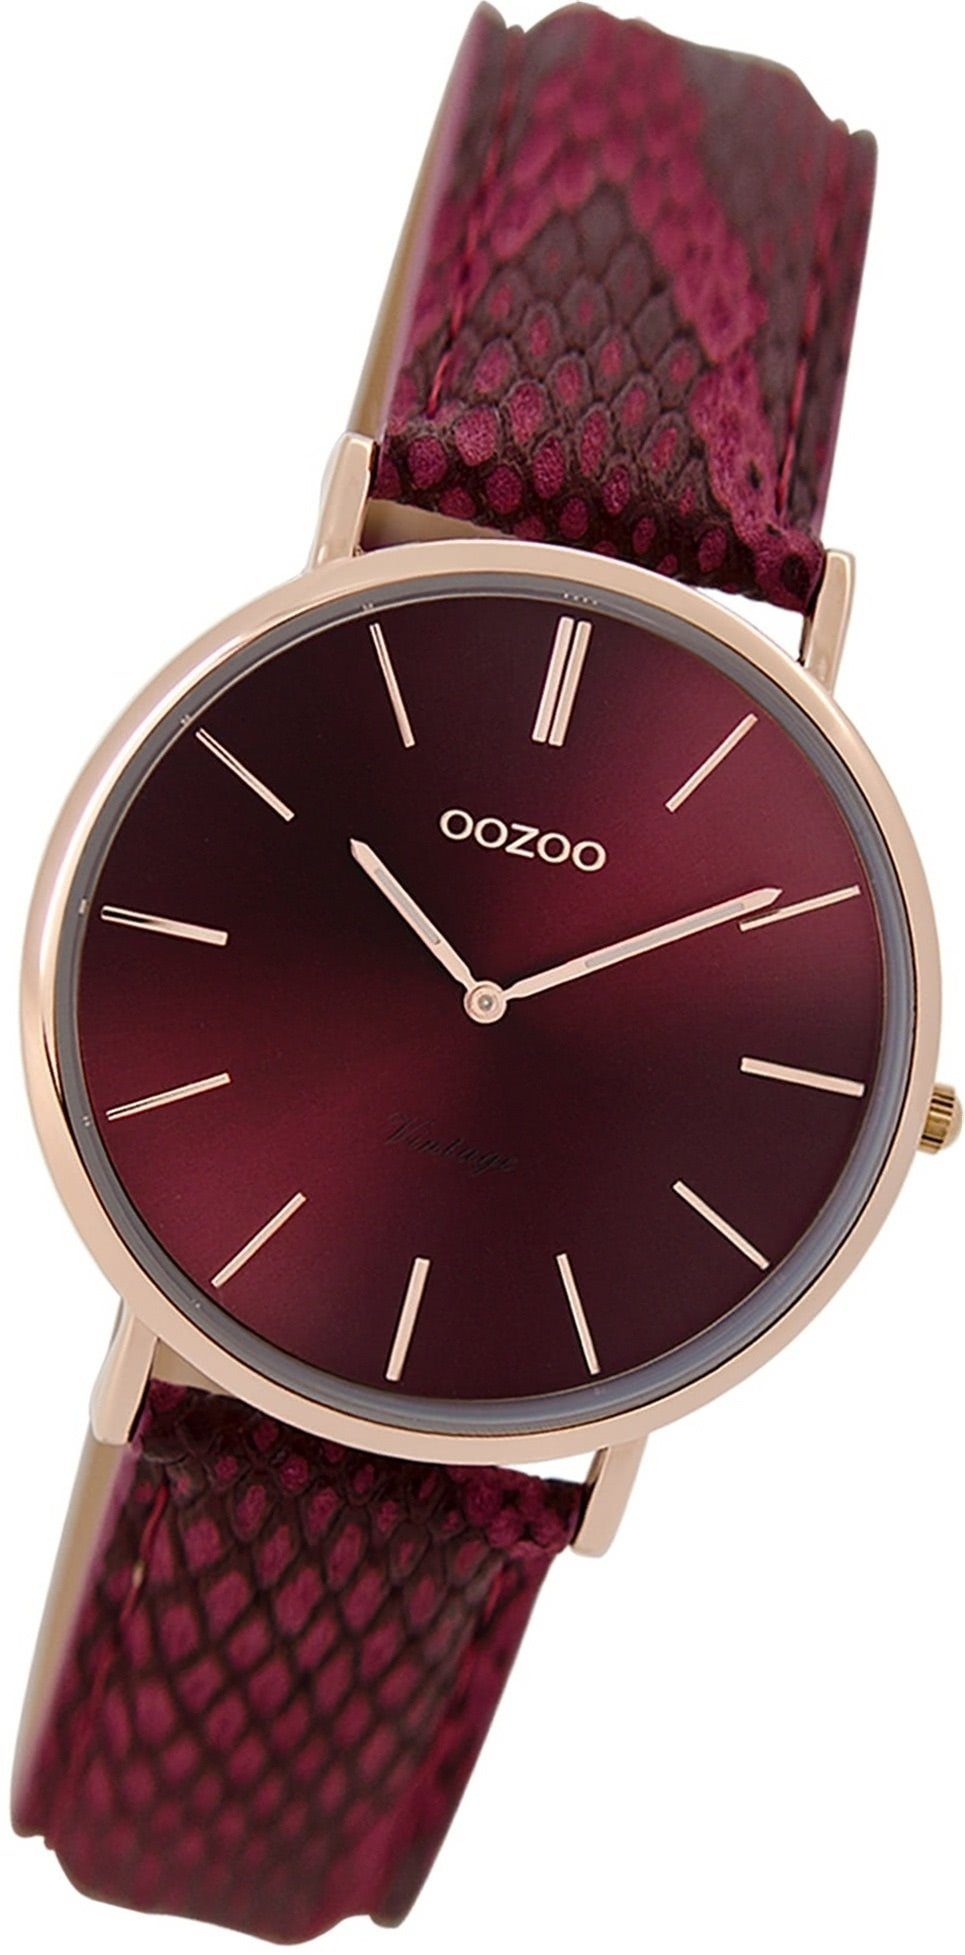 OOZOO Quarzuhr Oozoo Damen Armbanduhr Vintage Analog, Damenuhr Lederarmband rot, rundes Gehäuse, mittel (ca. 32mm)